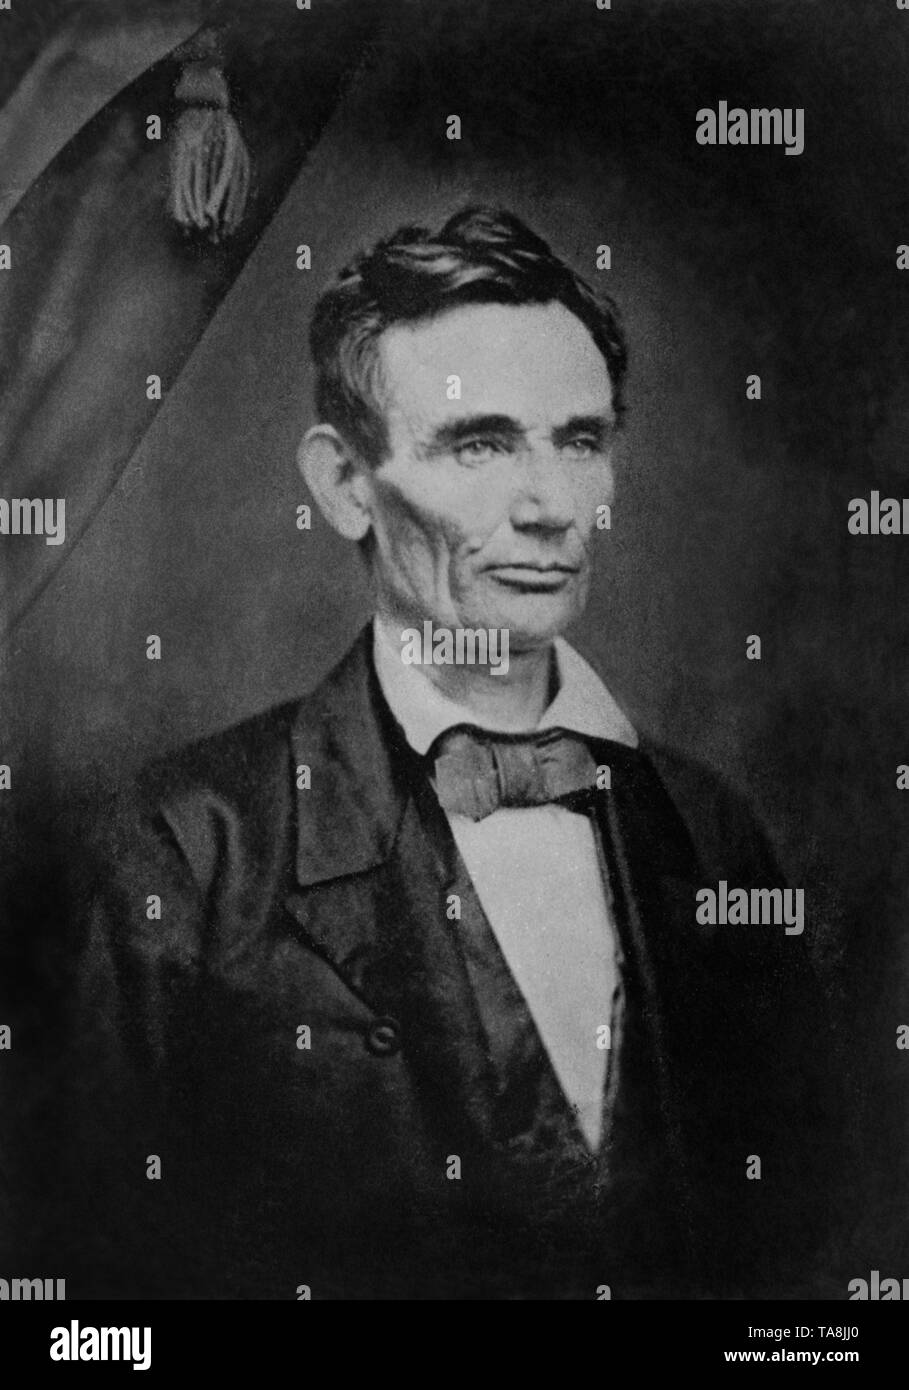 Head and shoulders Portrait d'Abraham Lincoln au cours de campagne présidentielle américaine de 1860, photographie prise en 1858 Banque D'Images